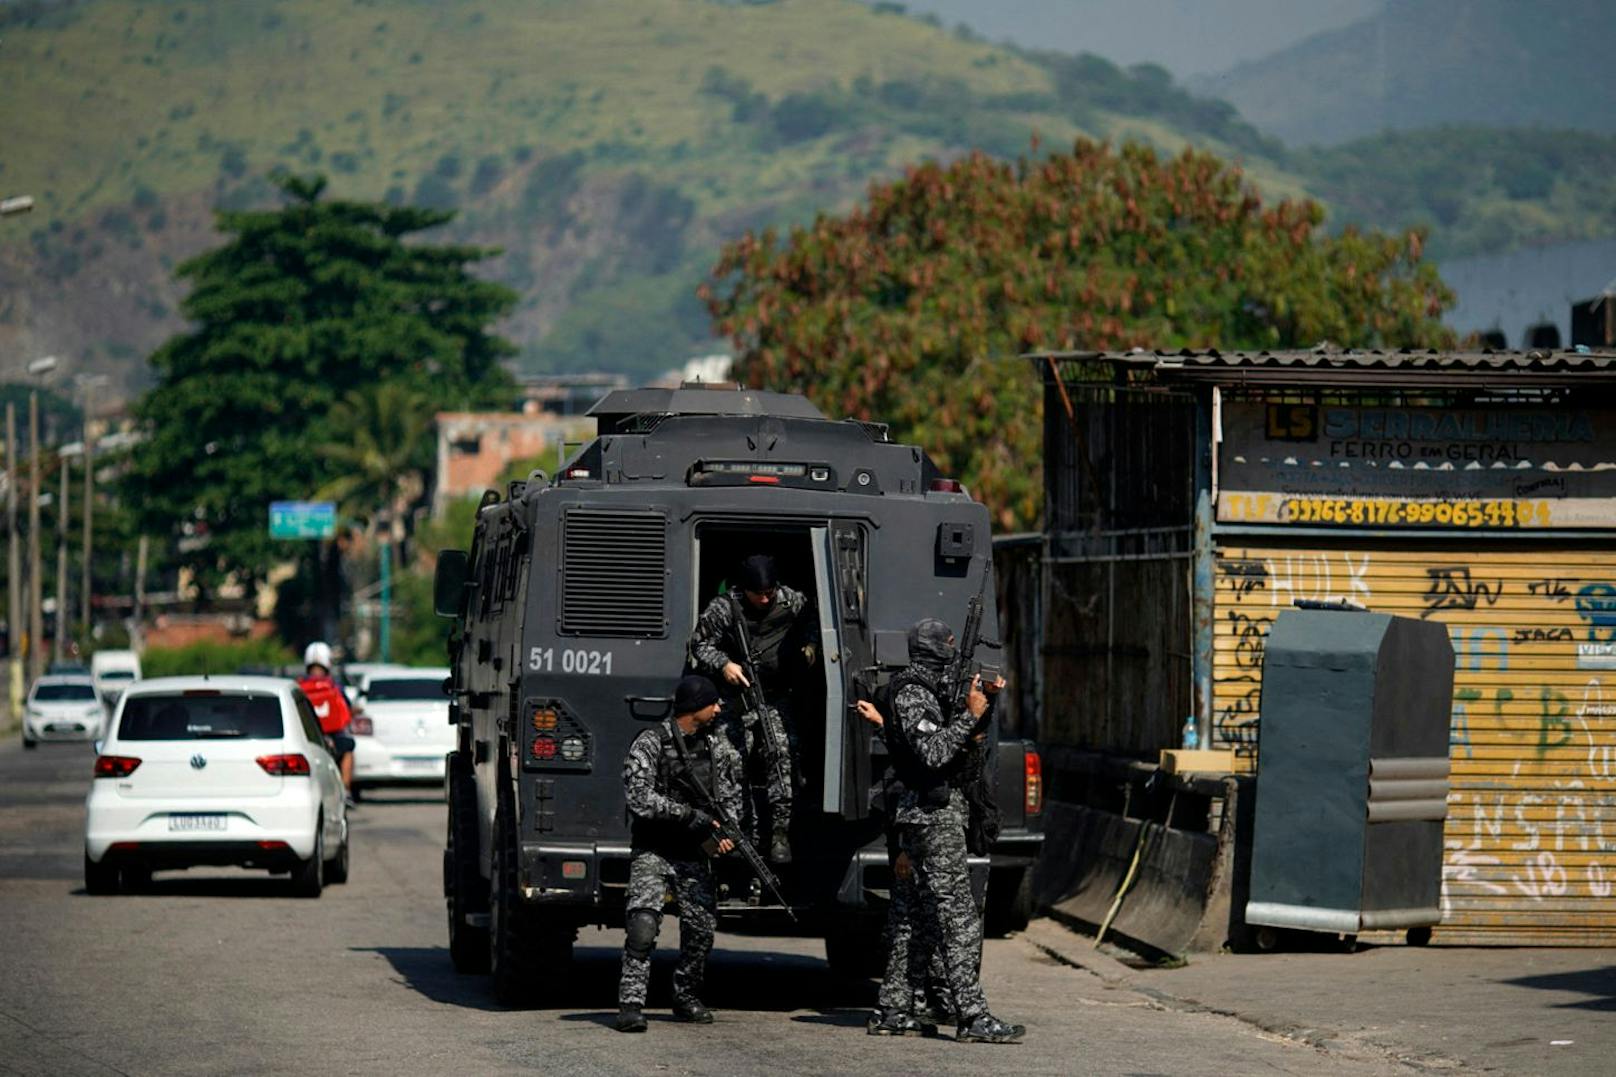 Der Polizeieinsatz forderte 25 Menschenleben. Es war der blutigste in der Geschichte von Rio de Janeiro.